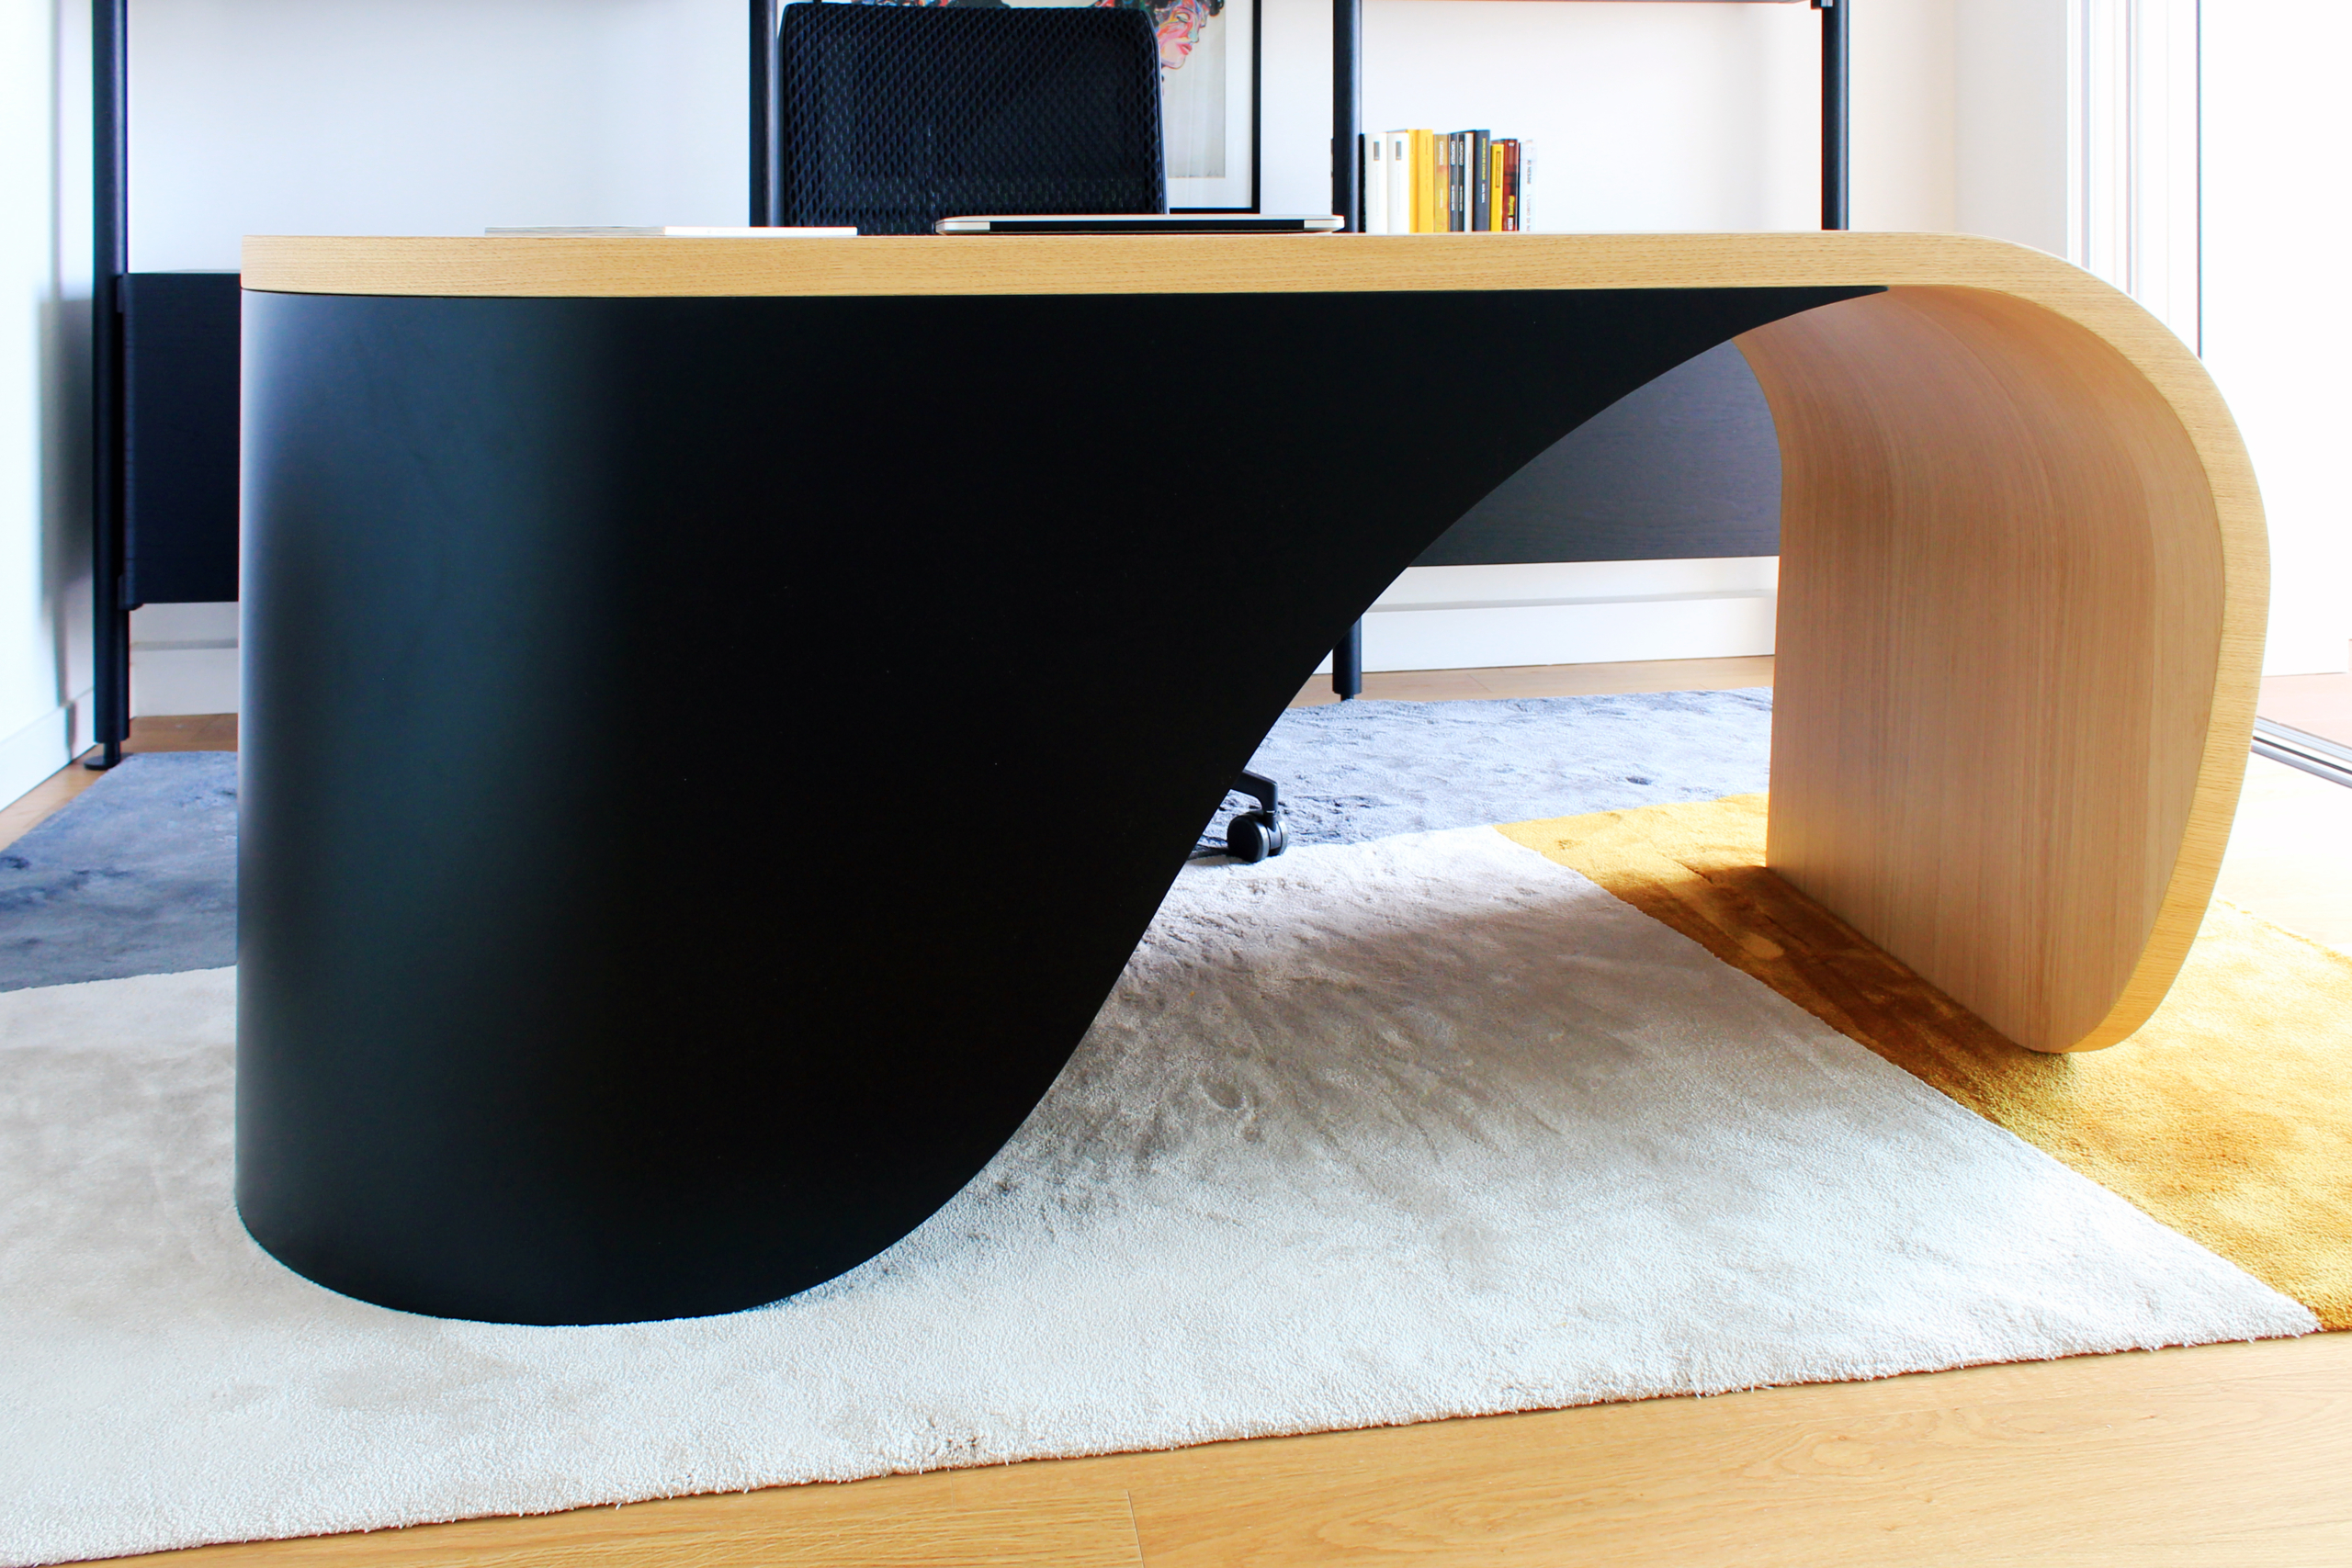 double-curving wooden desk